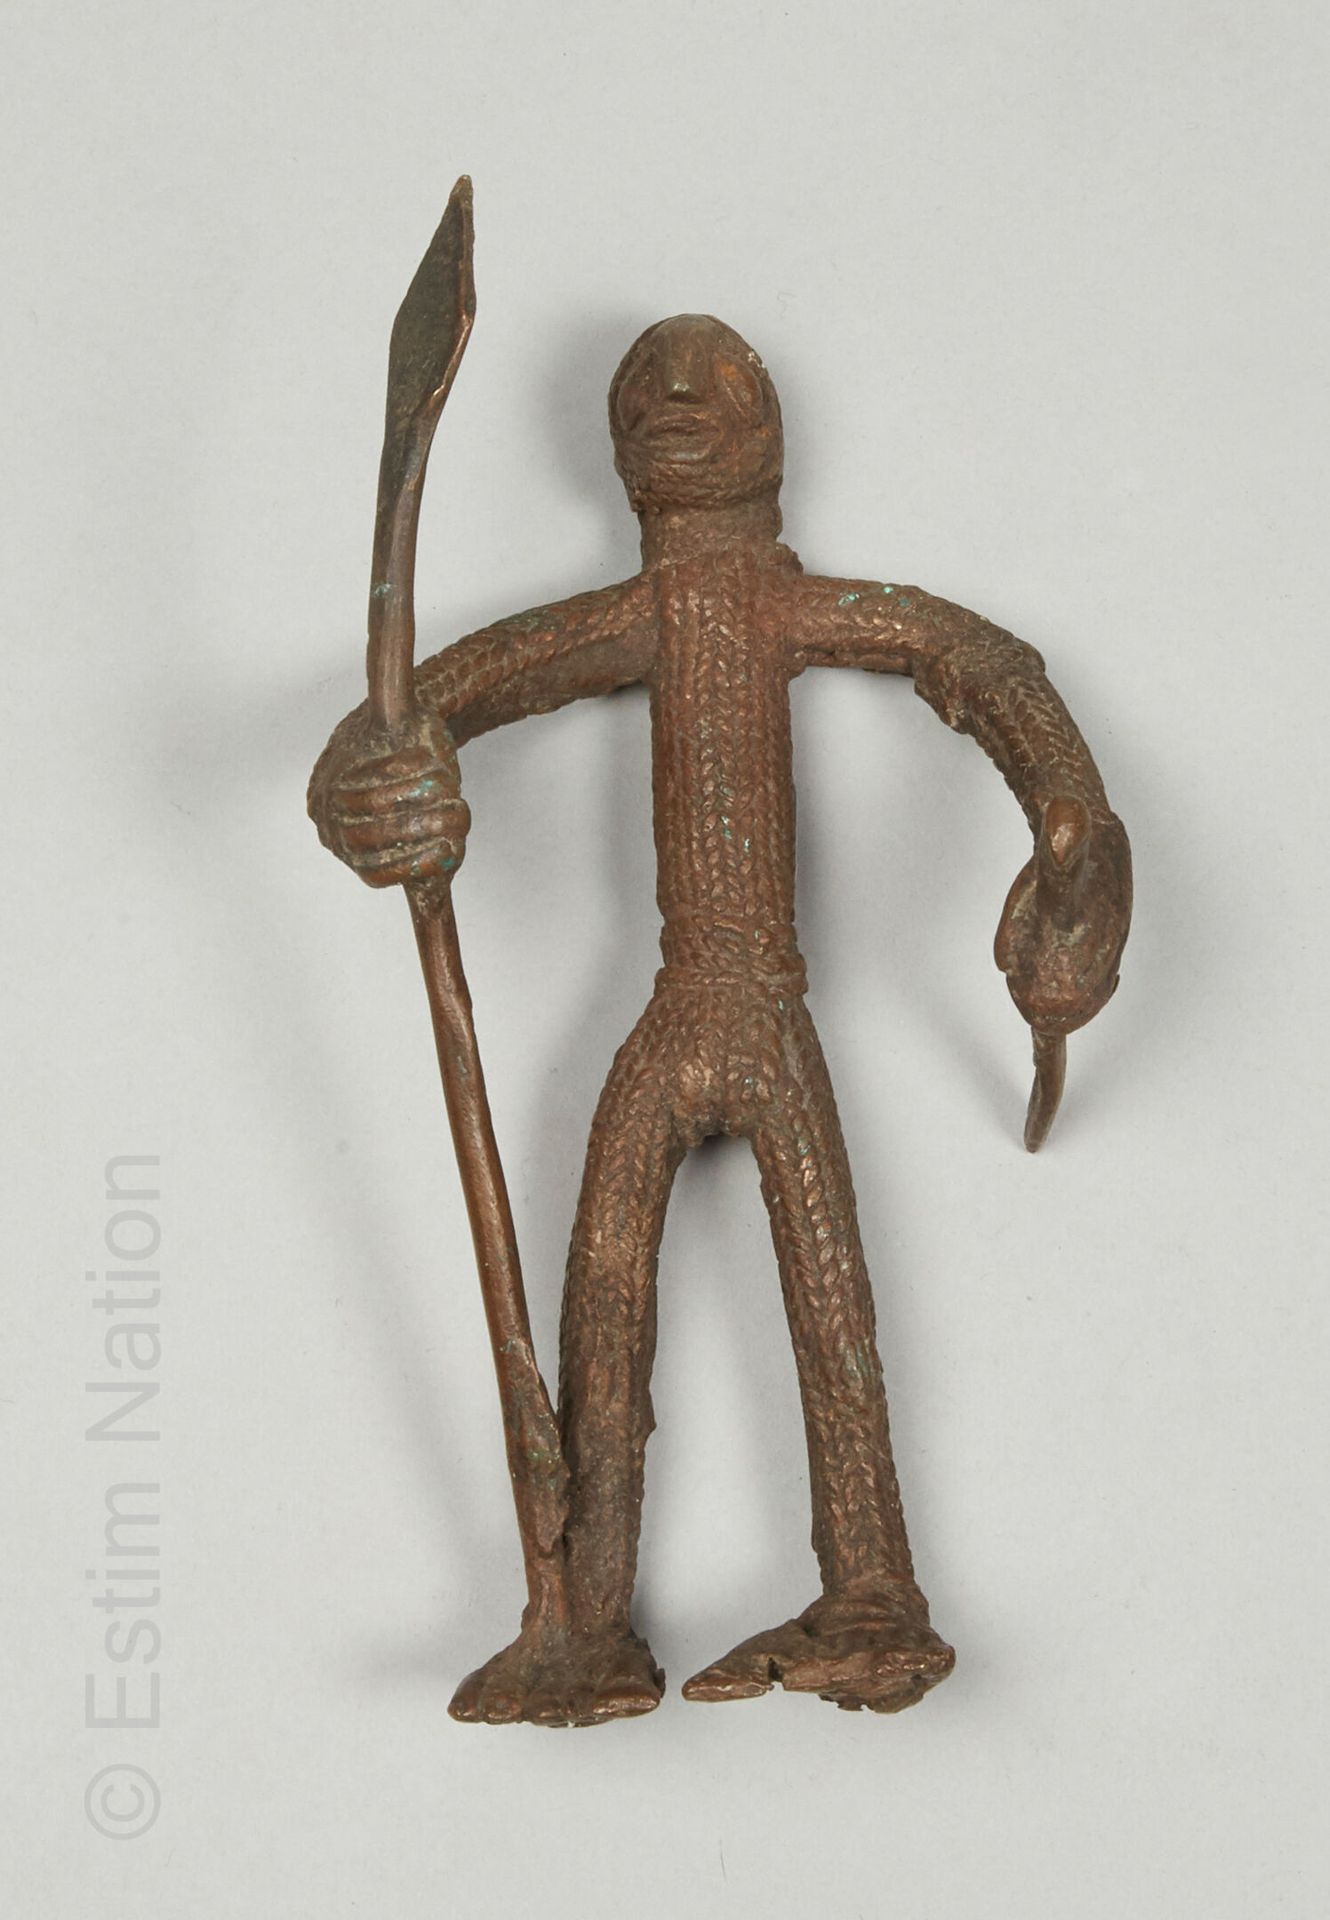 ARTS D'AFRIQUE Statuette vom Typ Gan, Burkina Faso.
Kupferlegierung
H. 18,5 cm

&hellip;